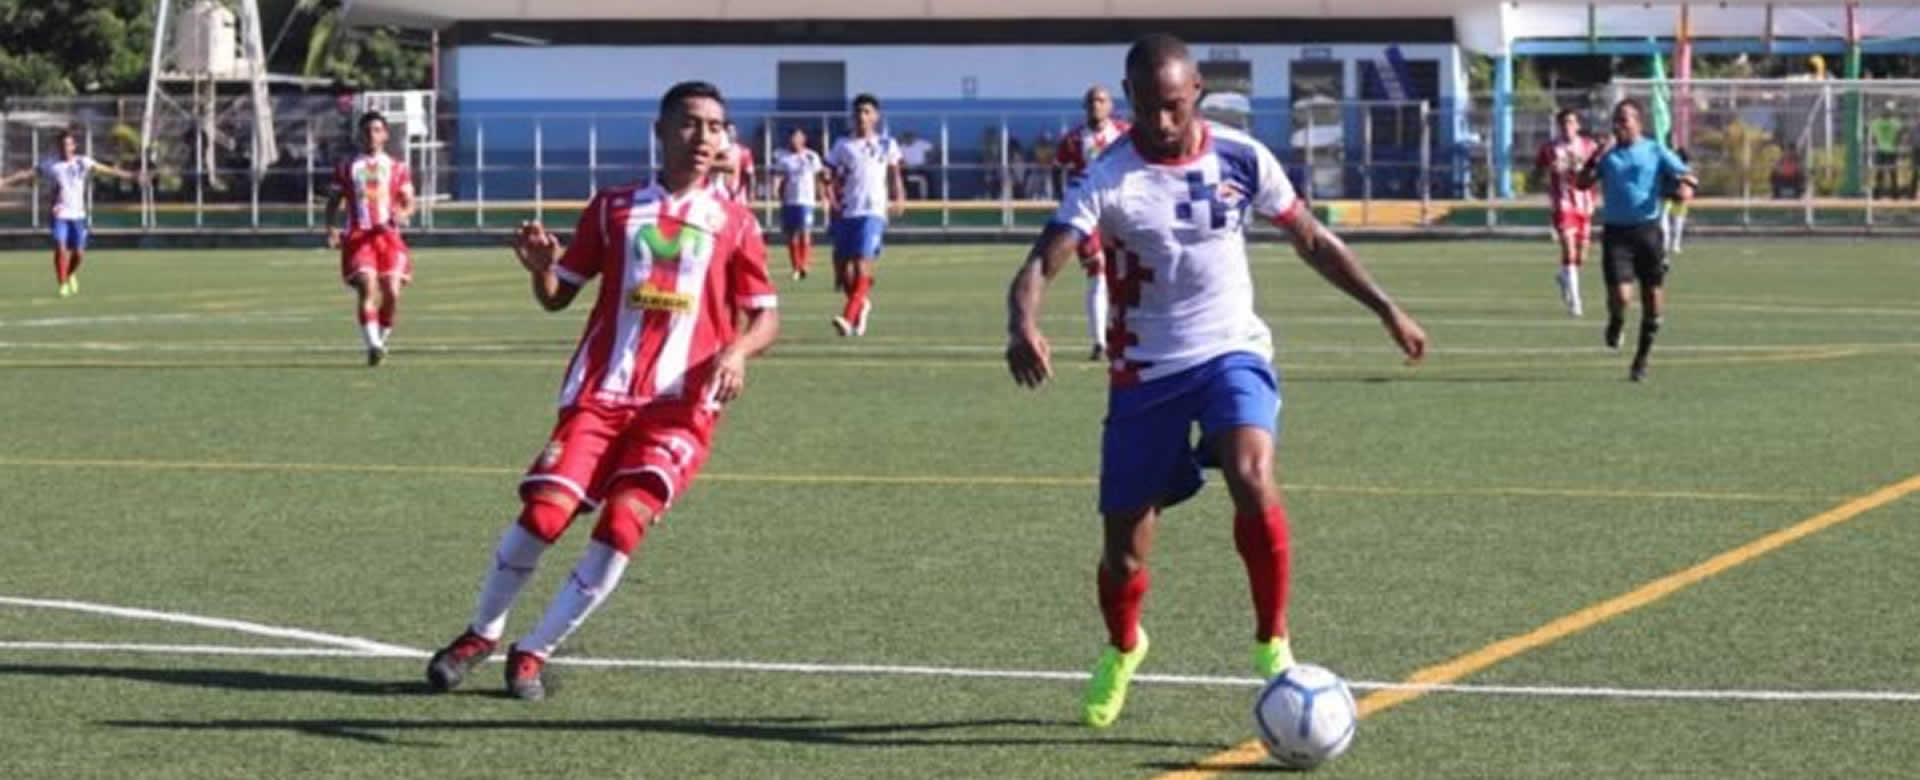 Fútbol nicaragüense preparado para resaltar en torneos internacionales